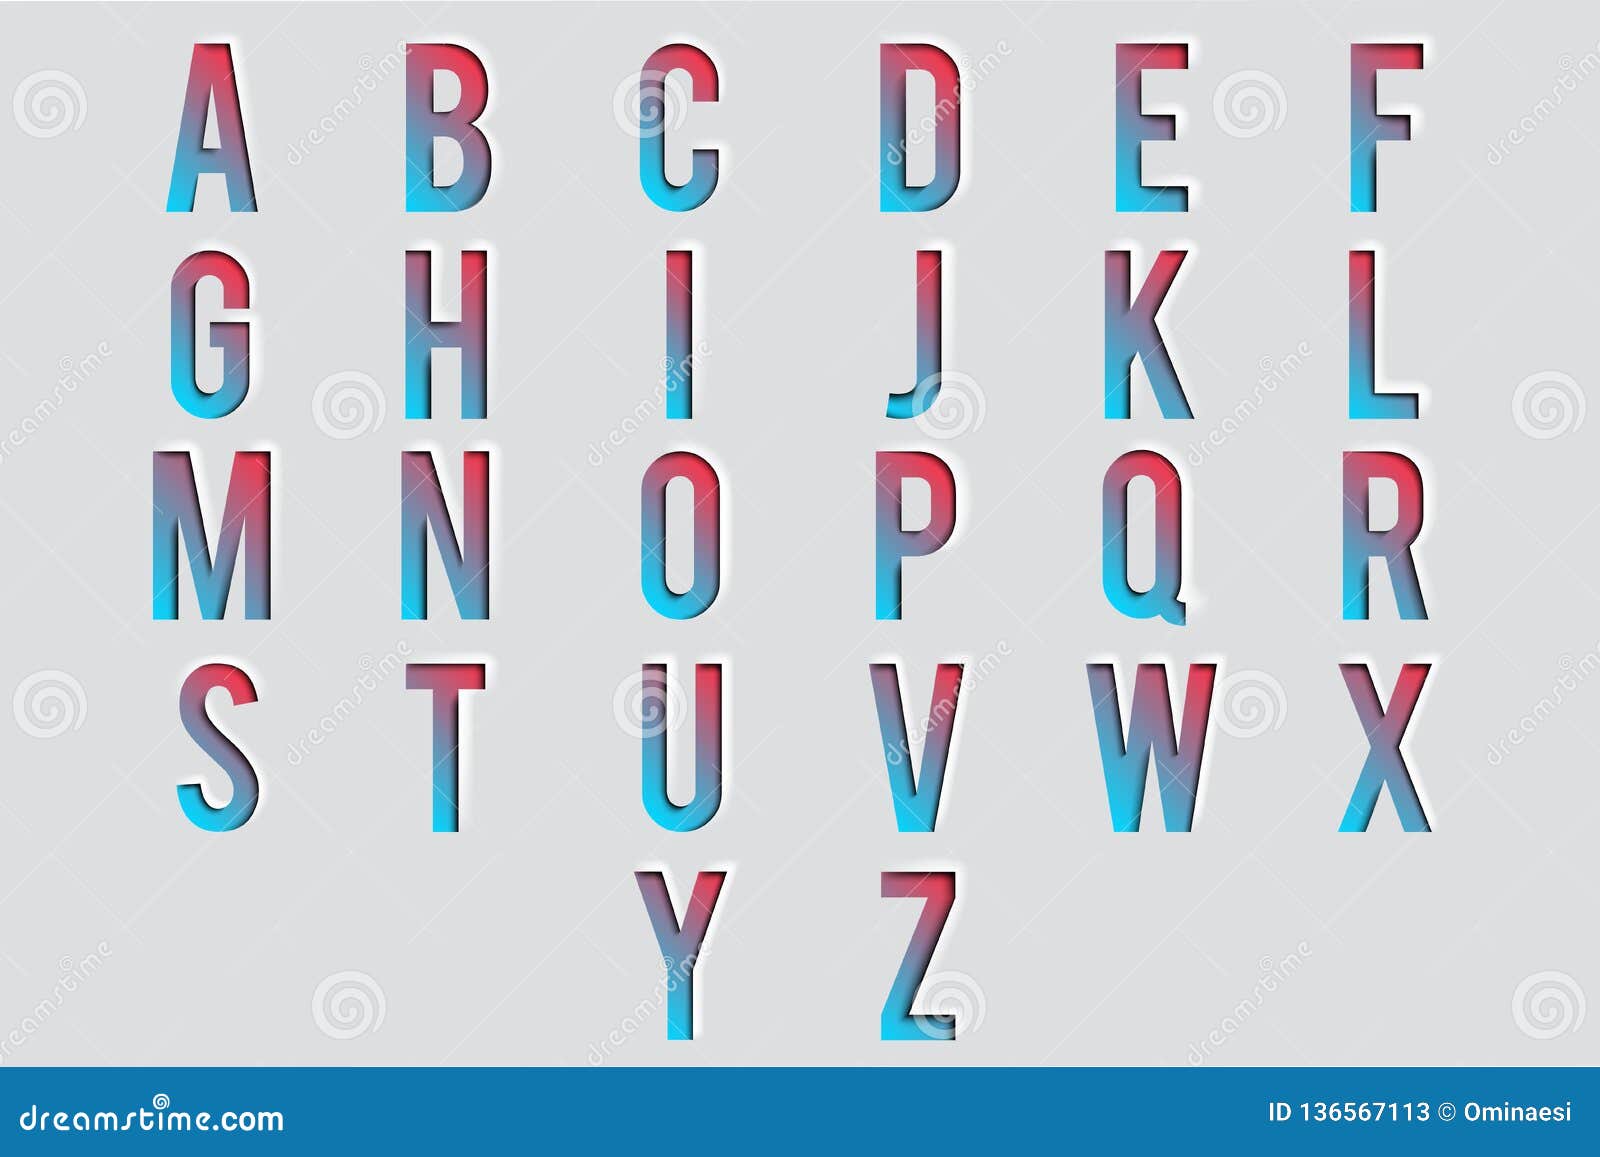 Download Cutout Paper Letters 3d Alphabet Design Vector ...